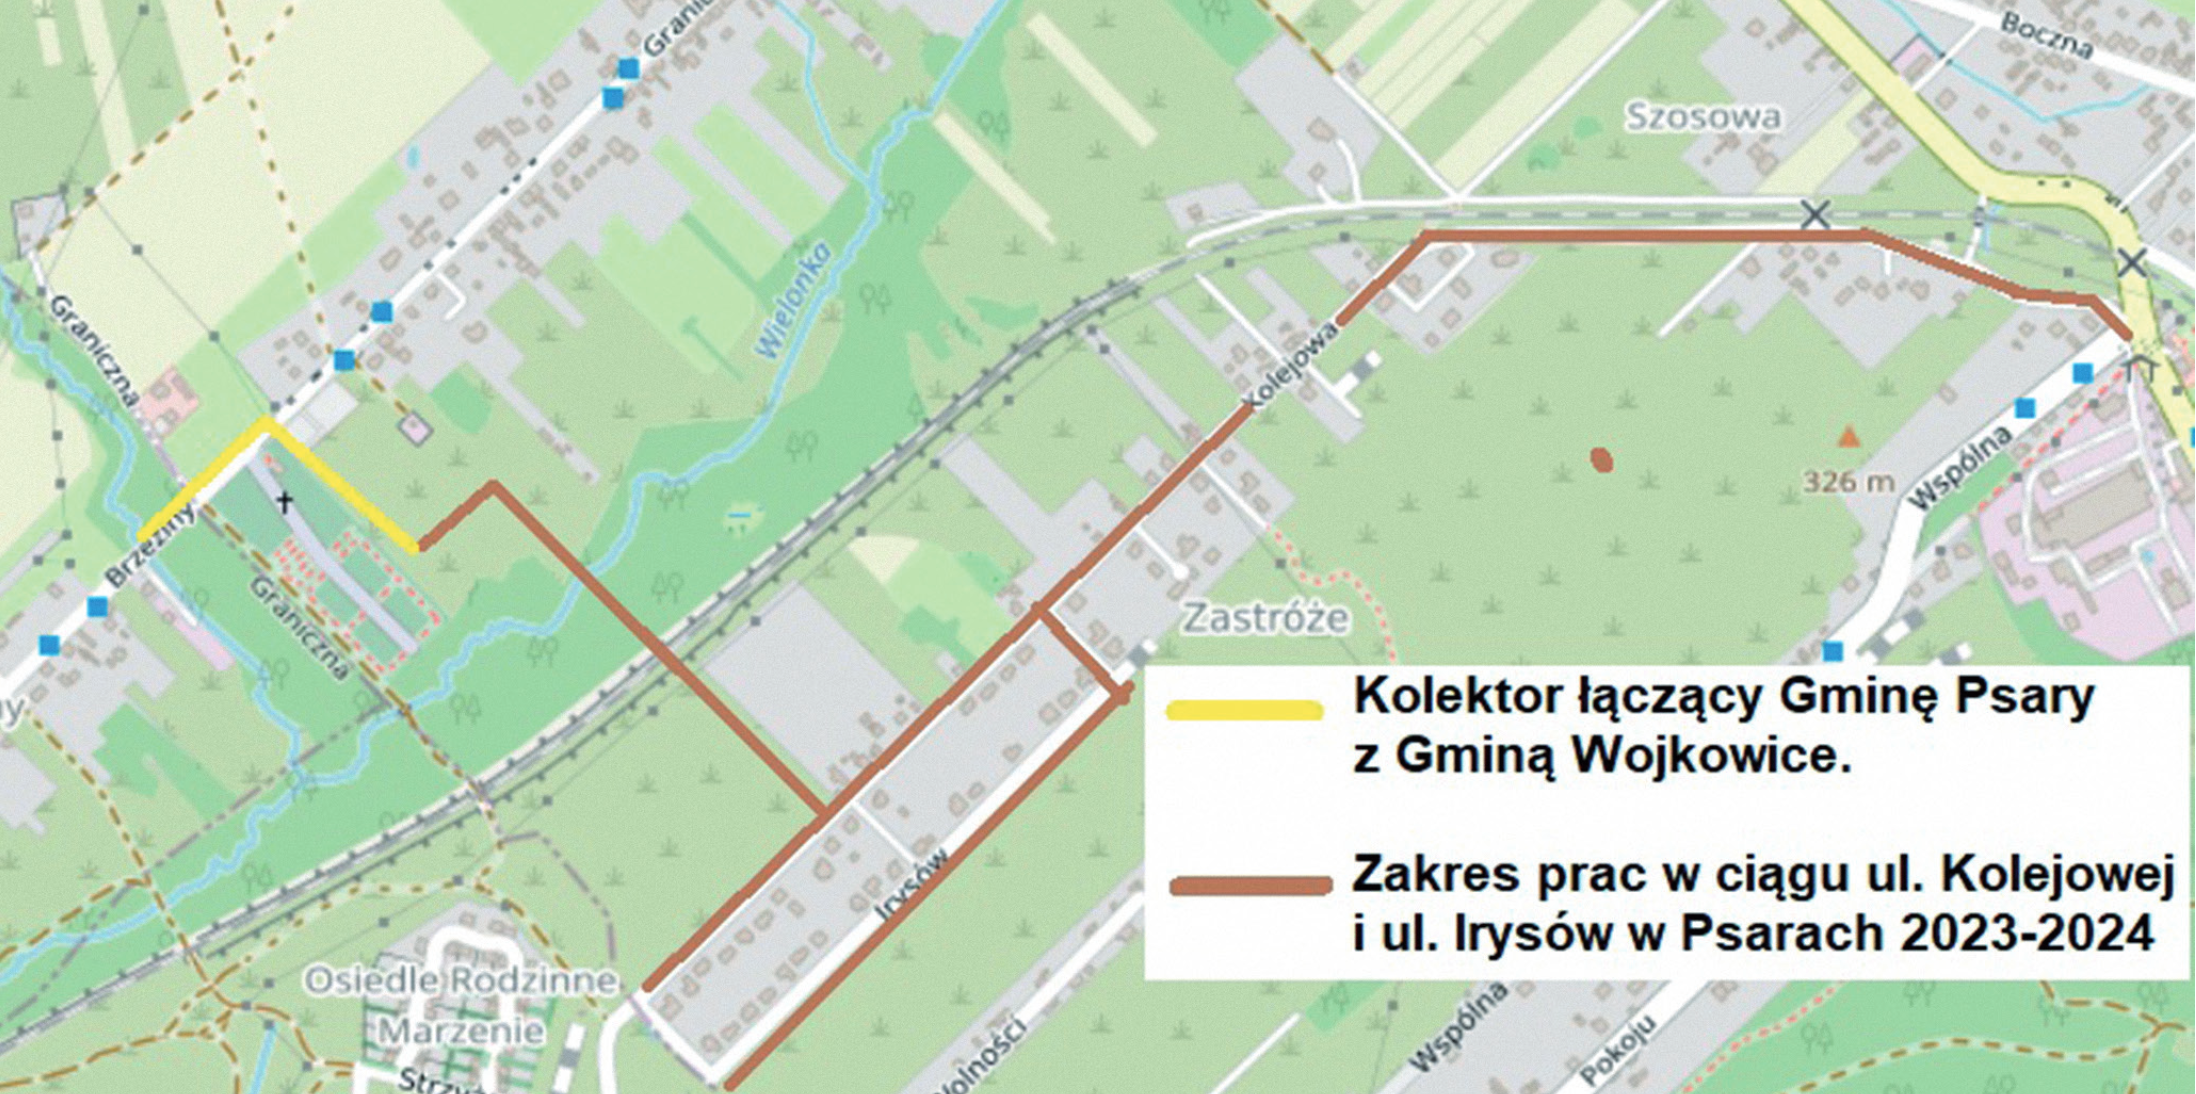 Zdjęcie przedstawia mapę, gdzie będie budowana kanalizacja sanitarna na terenie gminy Psary. kolorem żółtym zaznaczony jest kolektor łączący Gminę Psary z Gminą Wojkowice wykonany w 2022 roku. Kolorem pomarańczowym zaznaczony jest zakres prac w ciągu ulicy Kolejowej i ulicy Irysów w Psarach 